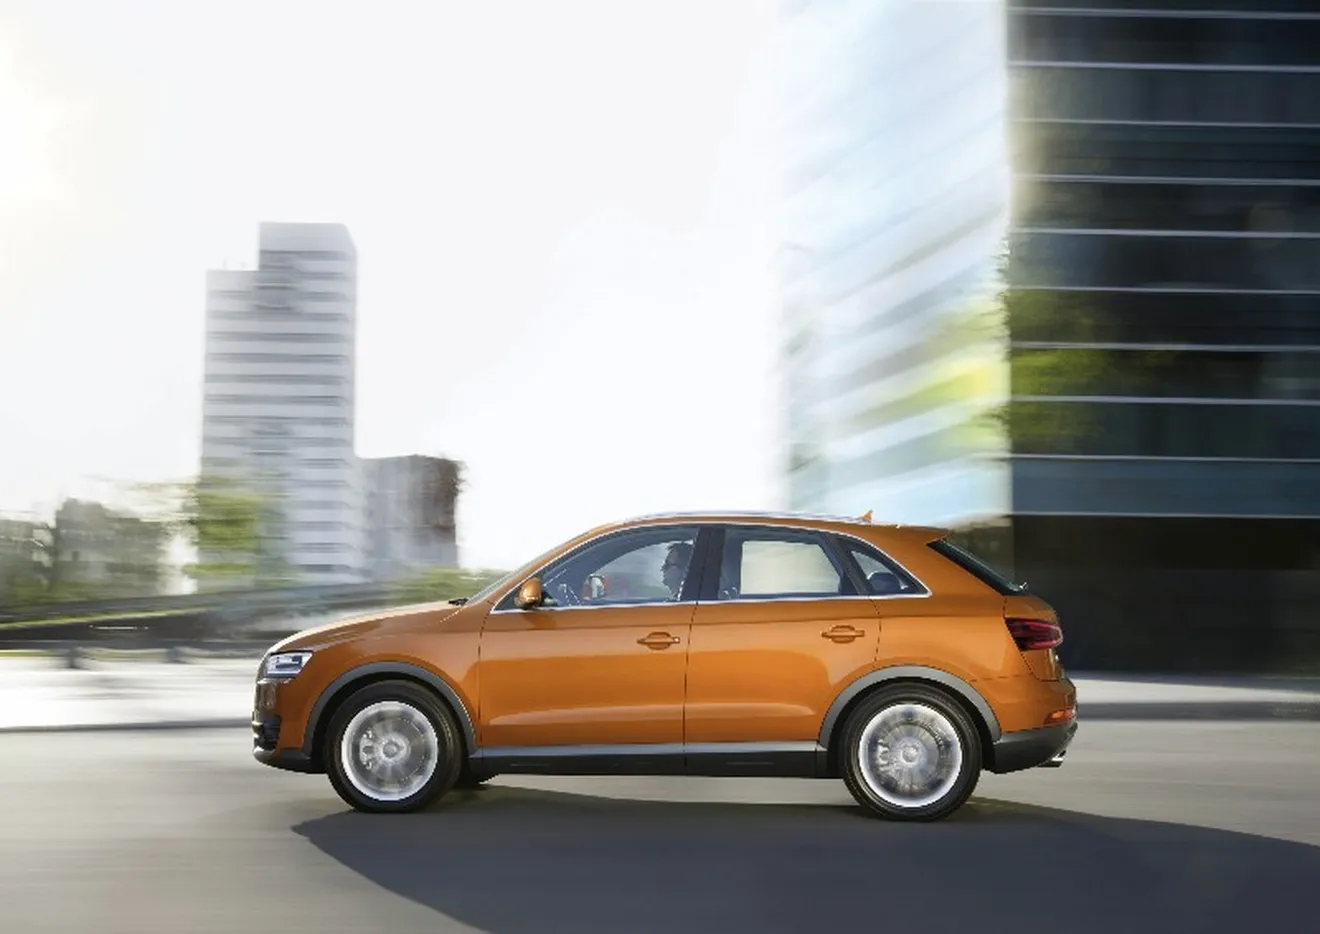 Audi Q3: Nuevos paquetes S-Line y Audi Exclusive